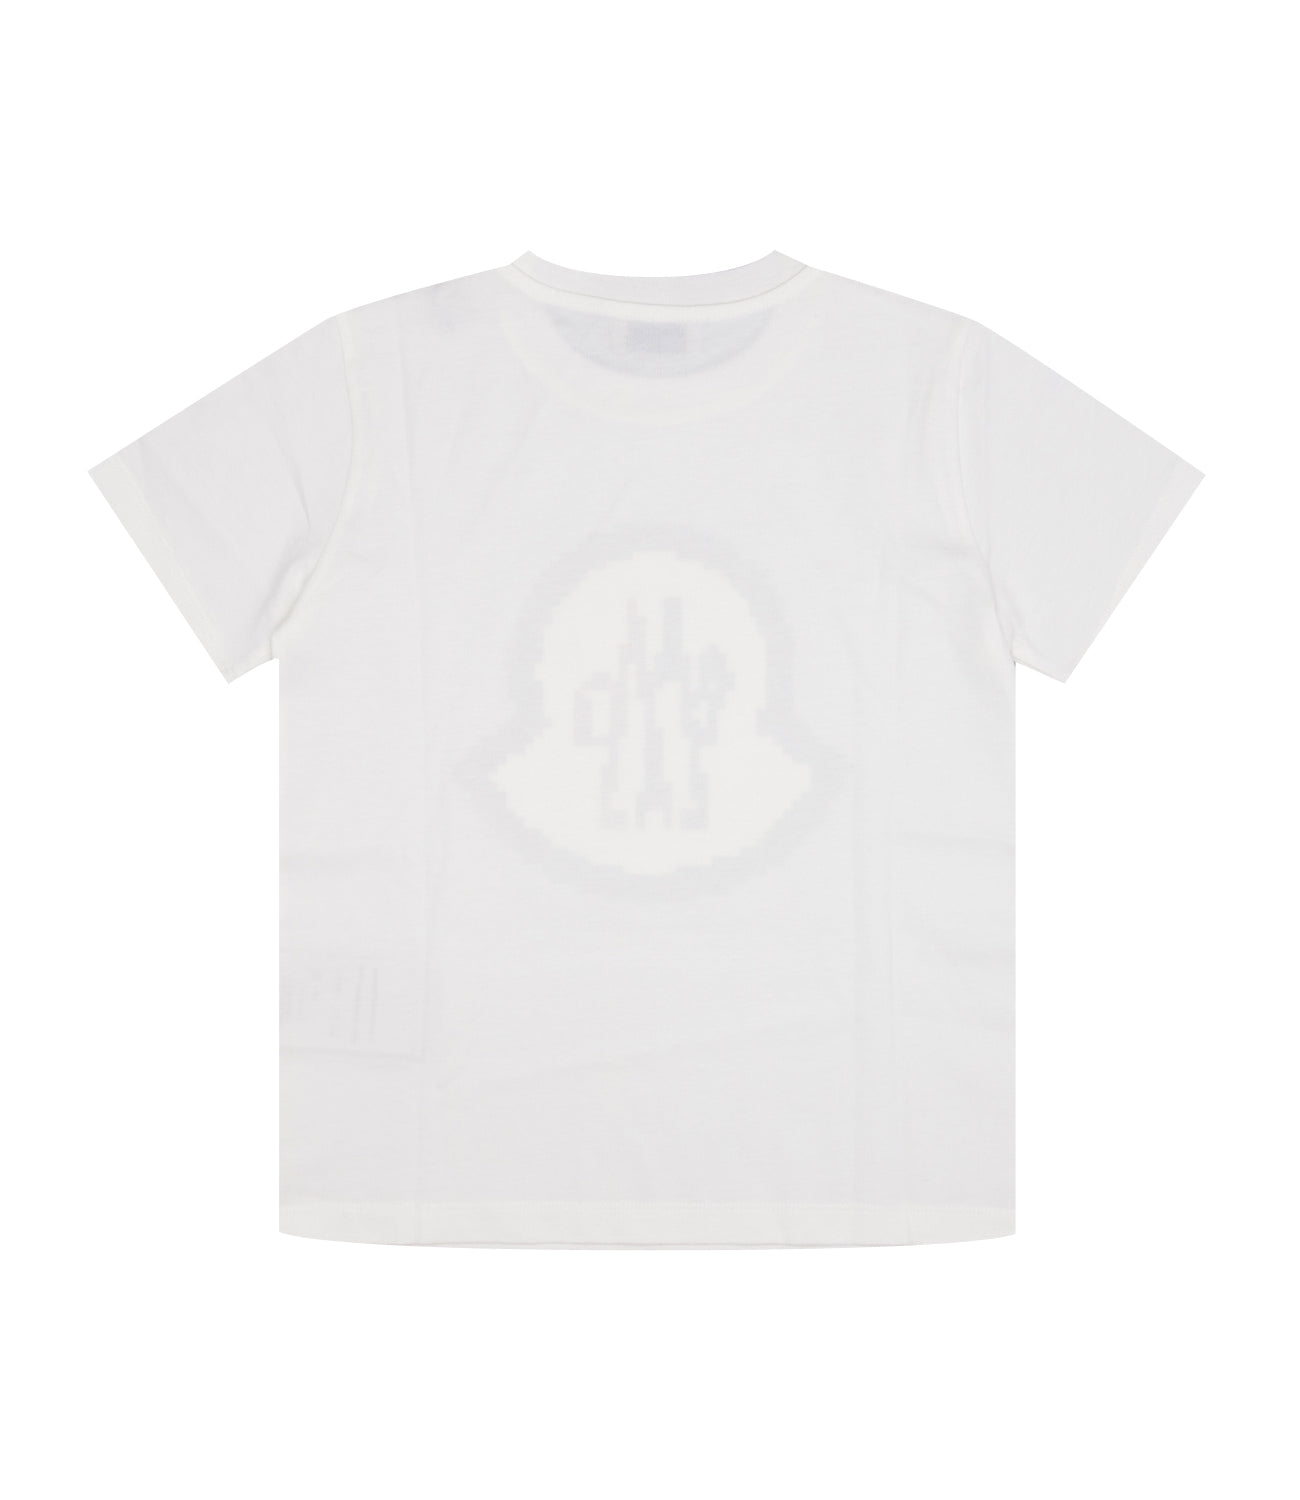 Moncler Junior | T-Shirt Panna